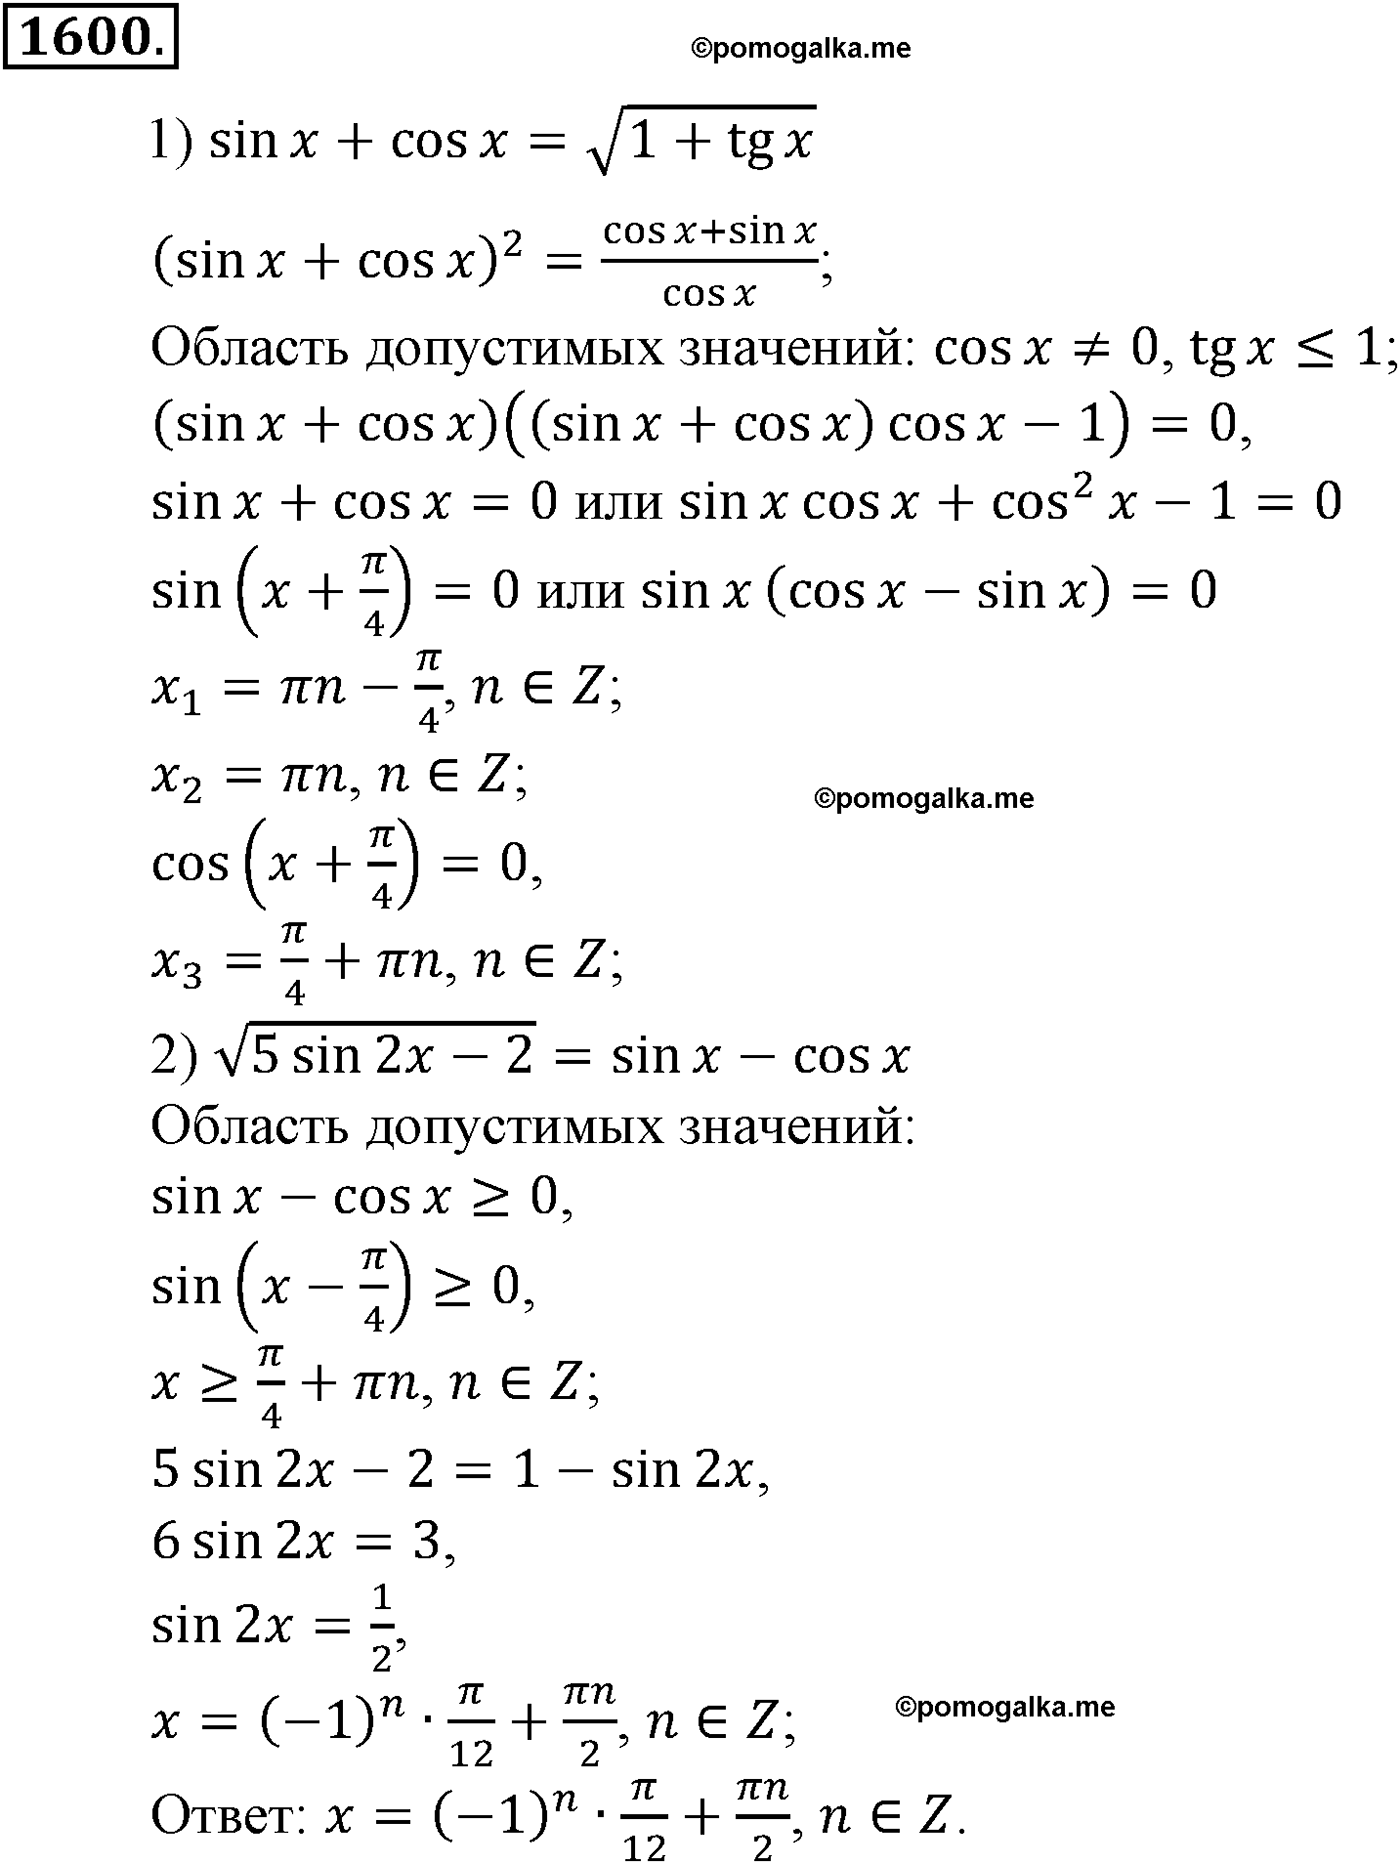 разбор задачи №1600 по алгебре за 10-11 класс из учебника Алимова, Колягина